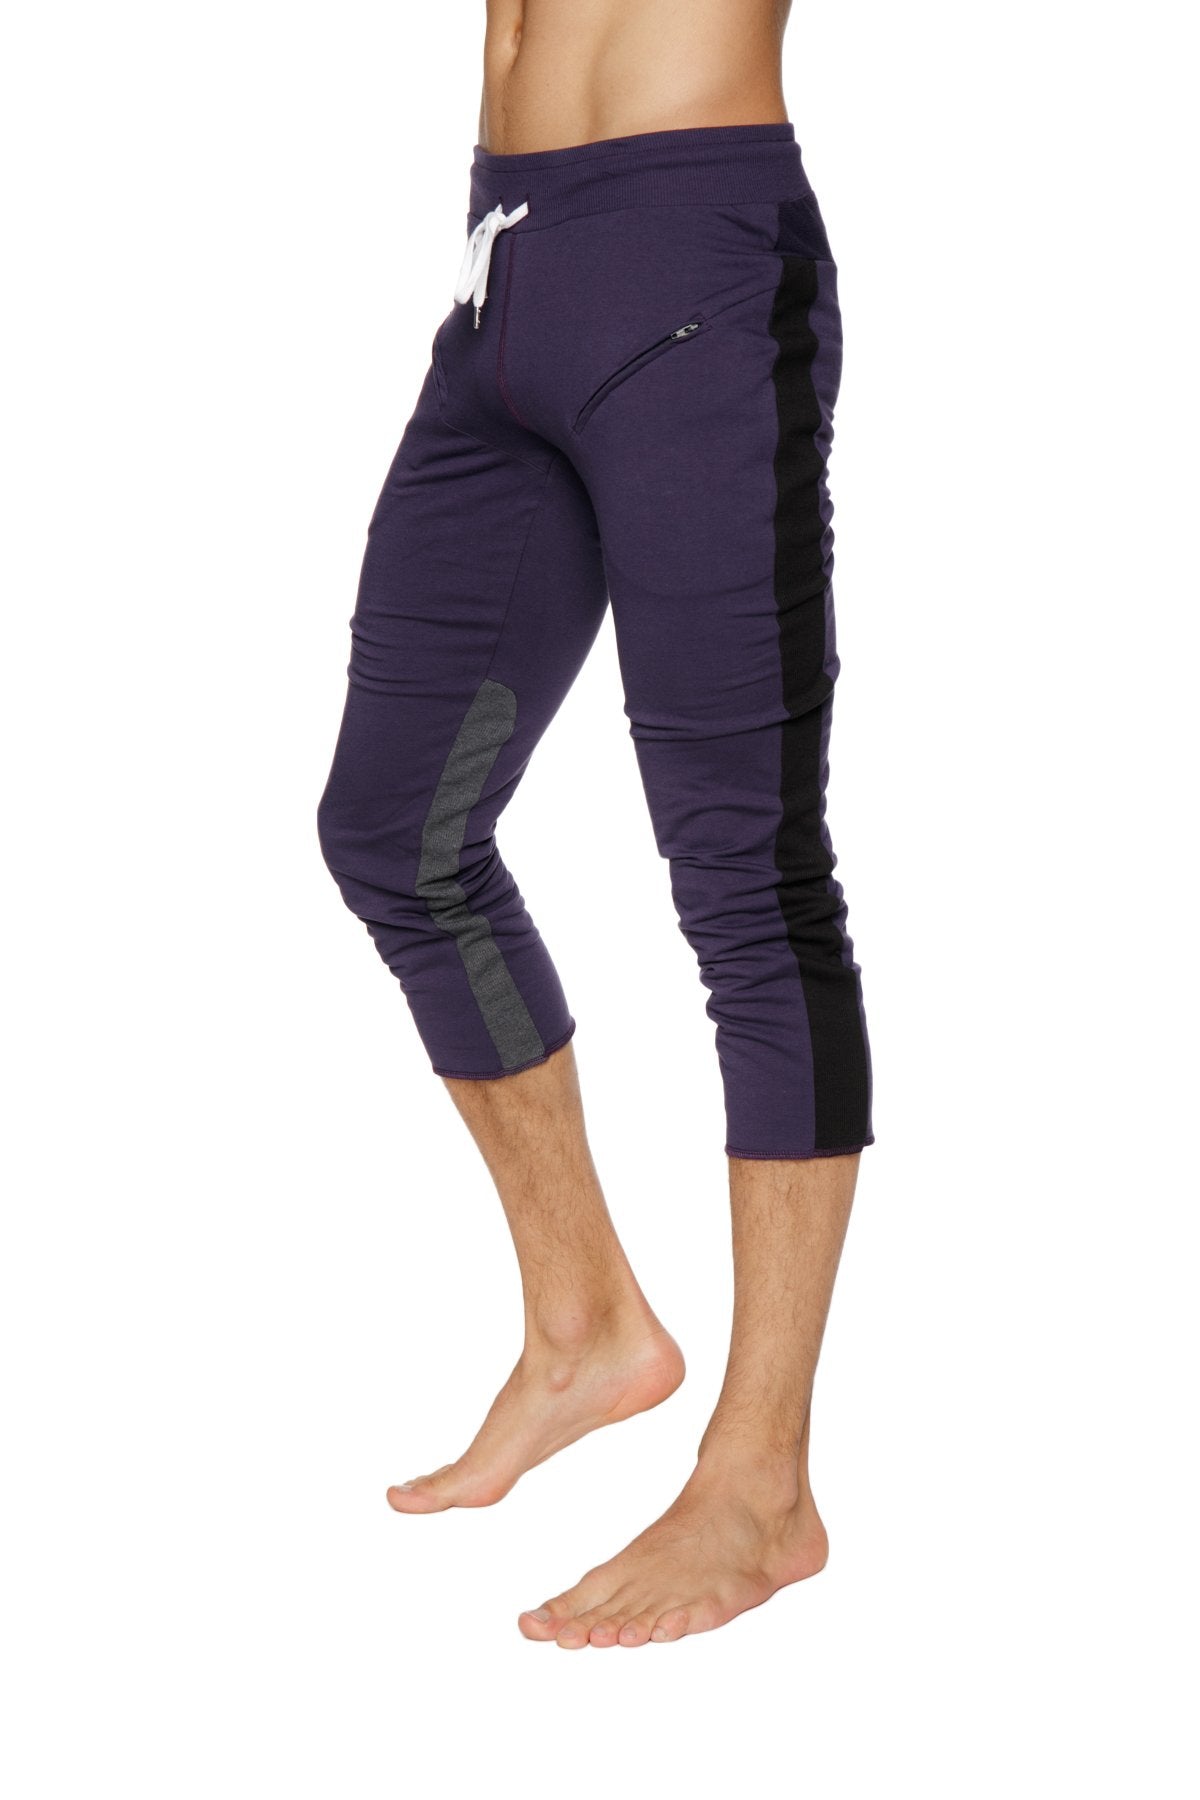 Mens 4/5 Zipper Pocket Capri Yoga Pants (Eggplant w/Black & Charcoal)